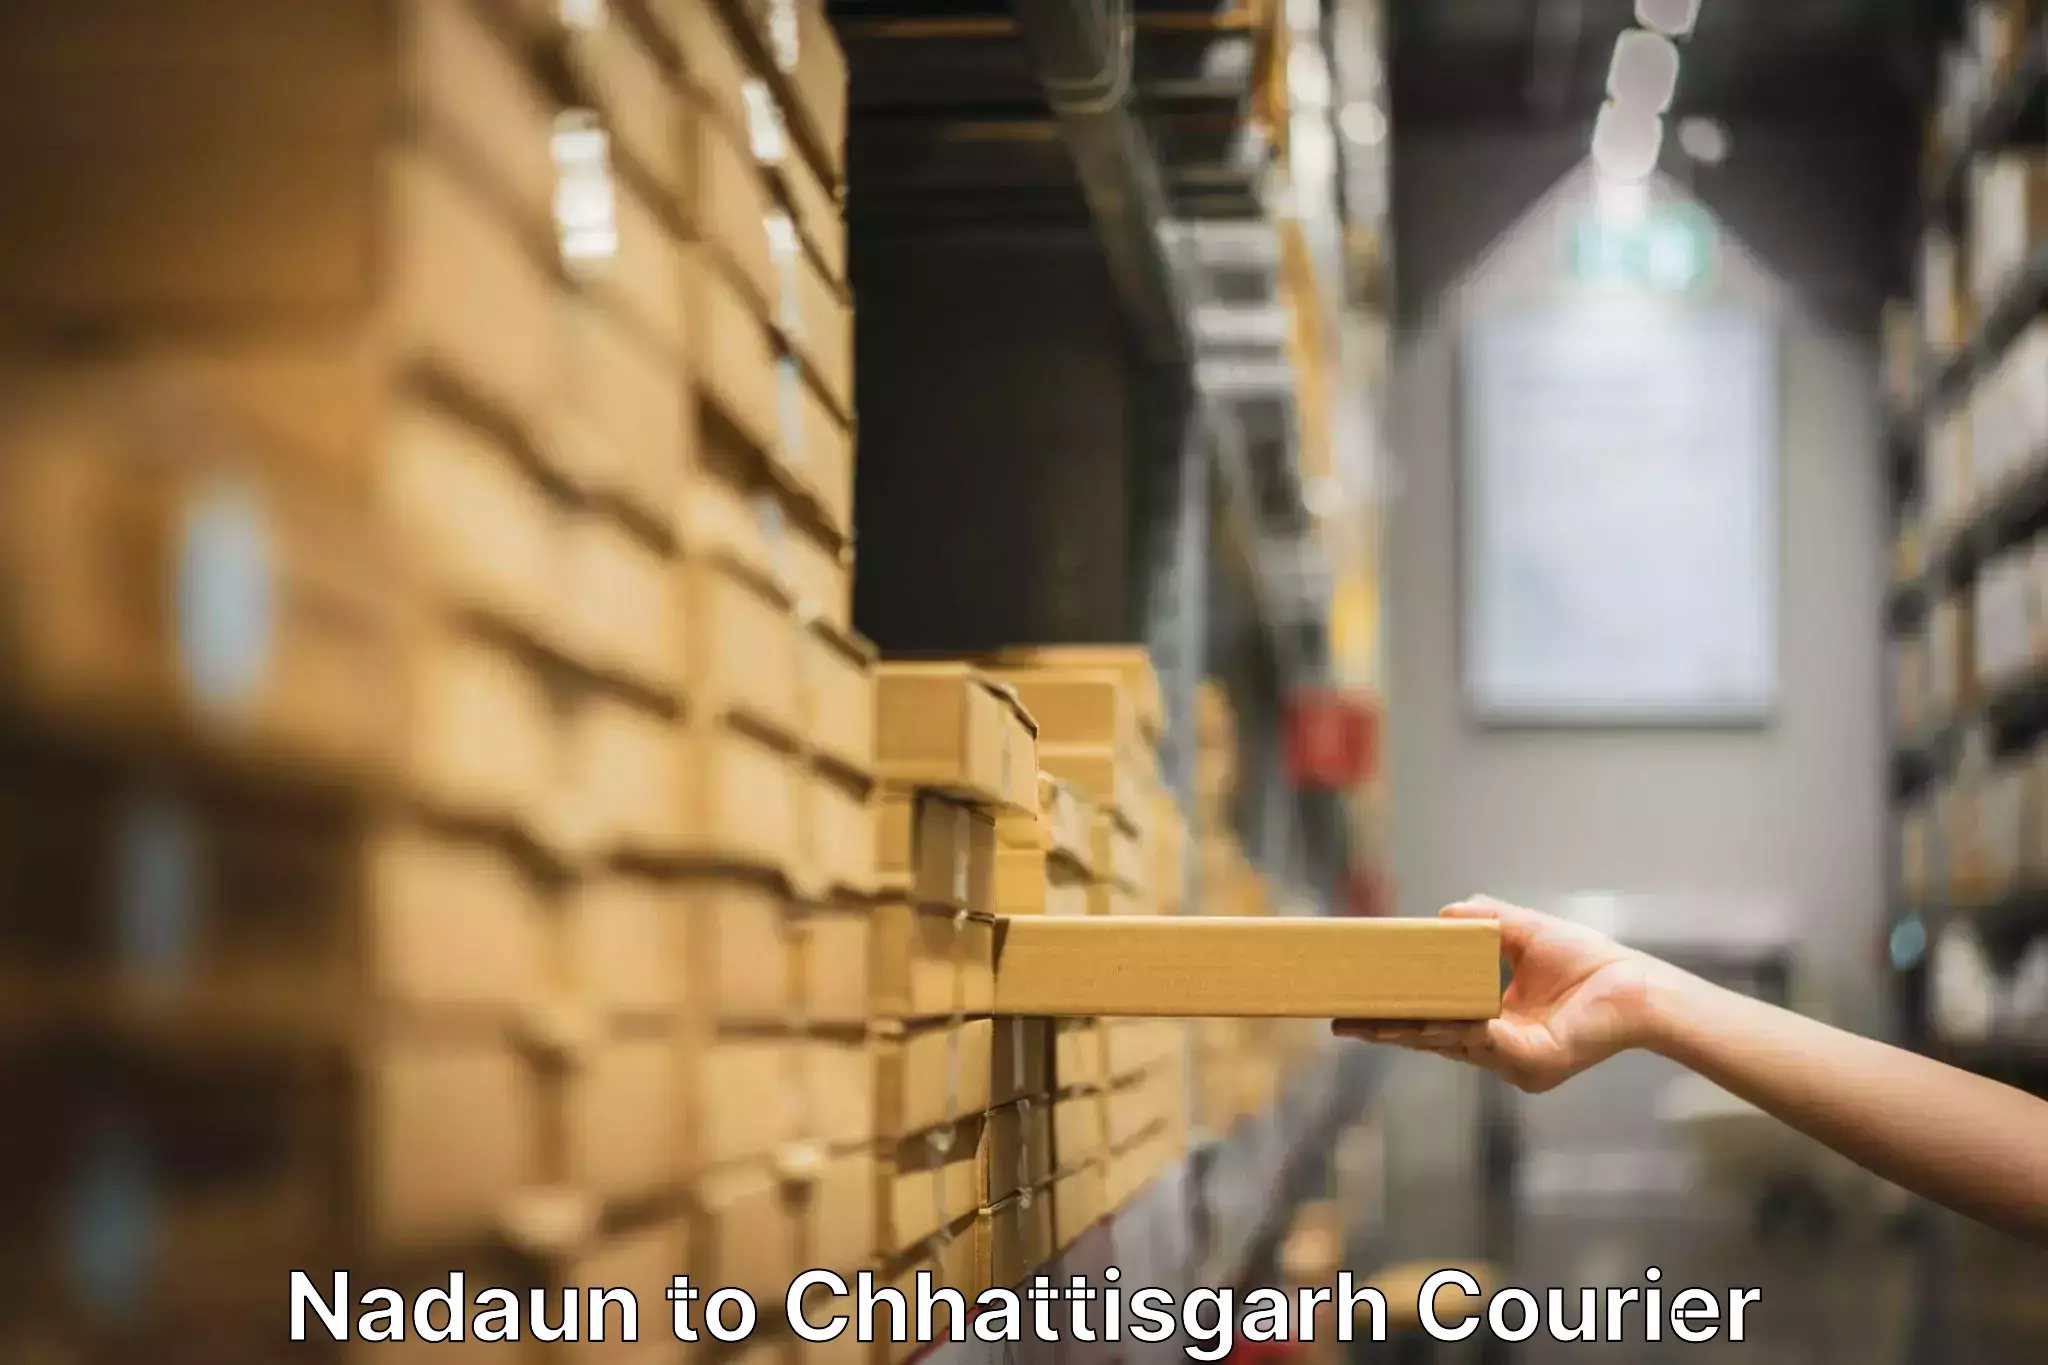 Professional moving company Nadaun to Pathalgaon